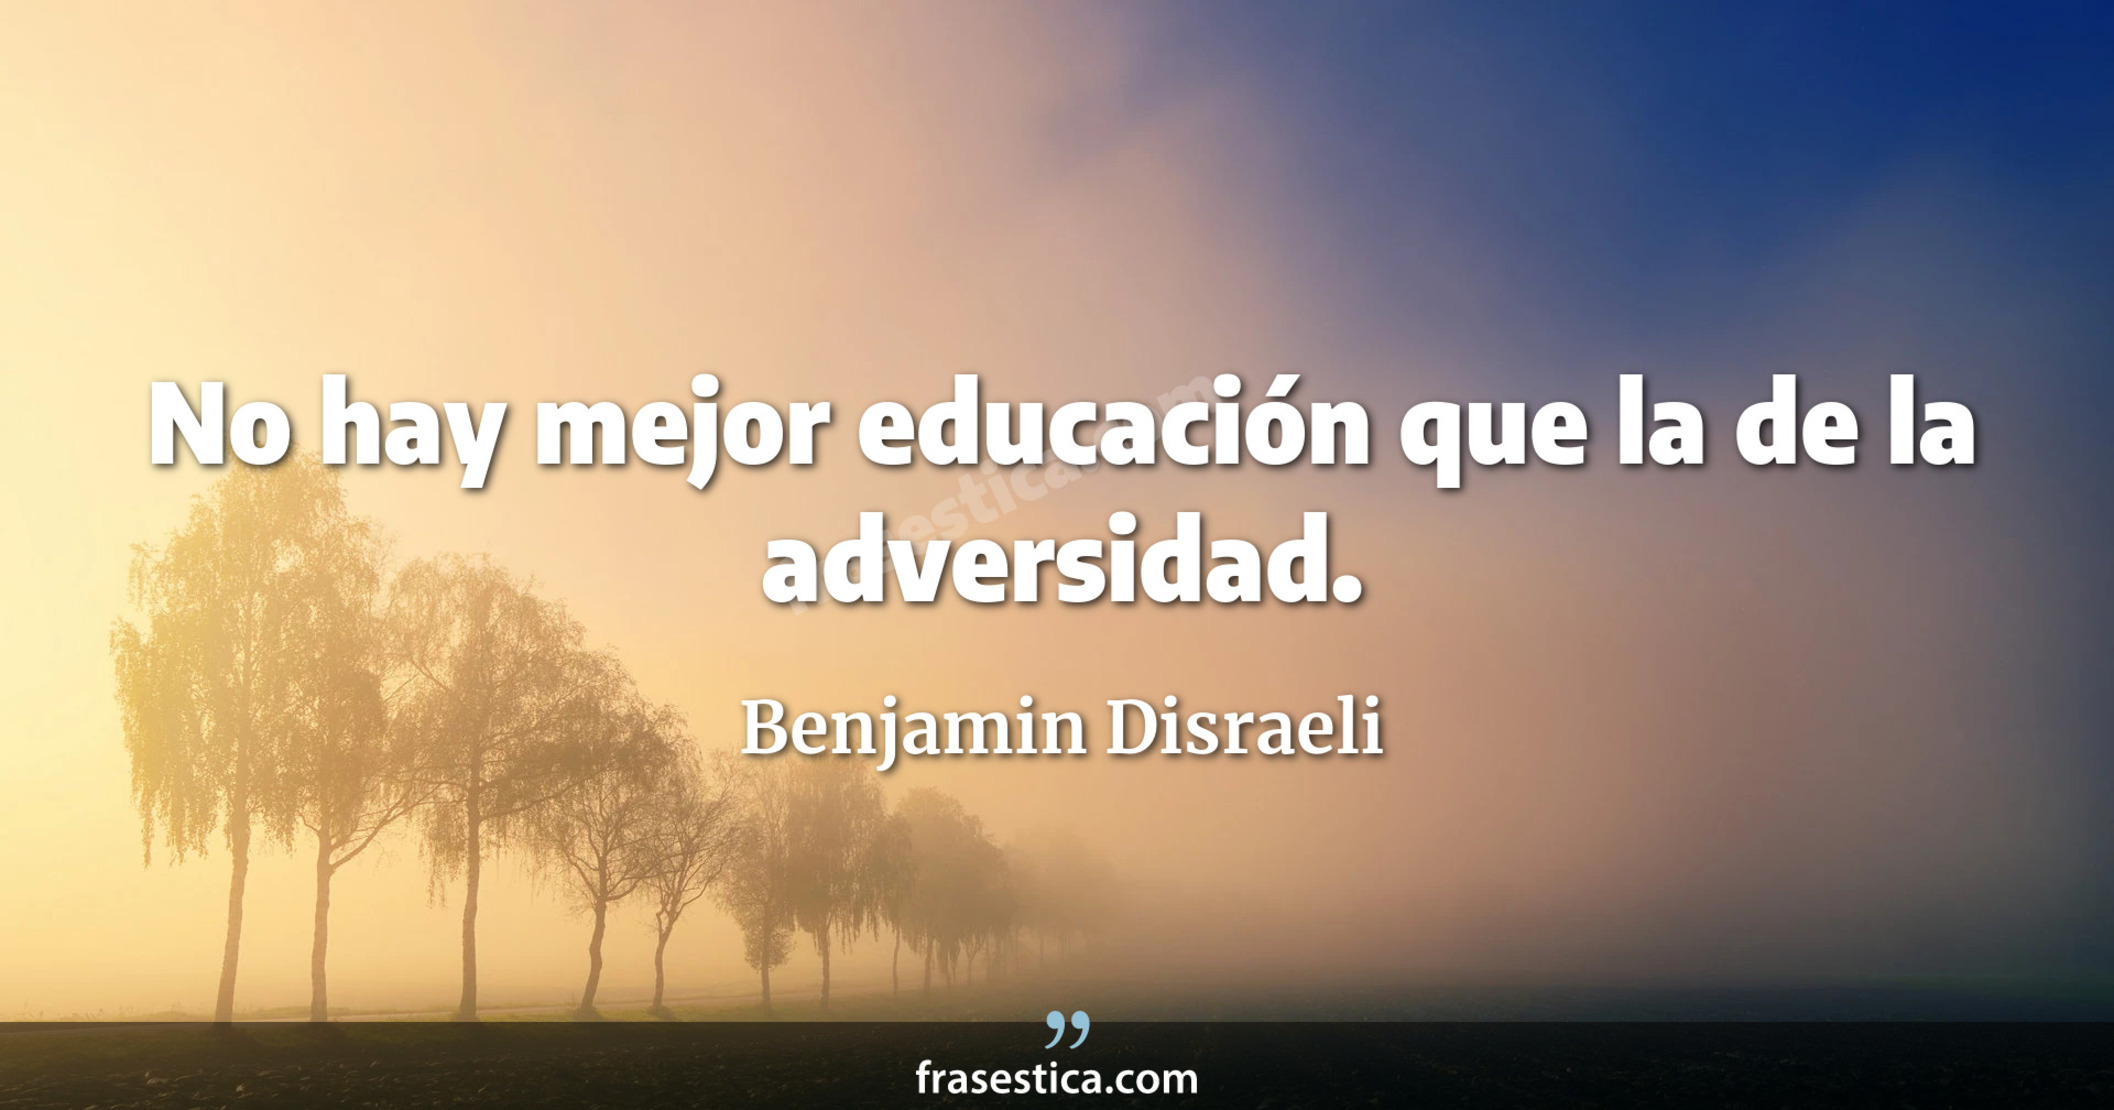 No hay mejor educación que la de la adversidad. - Benjamin Disraeli